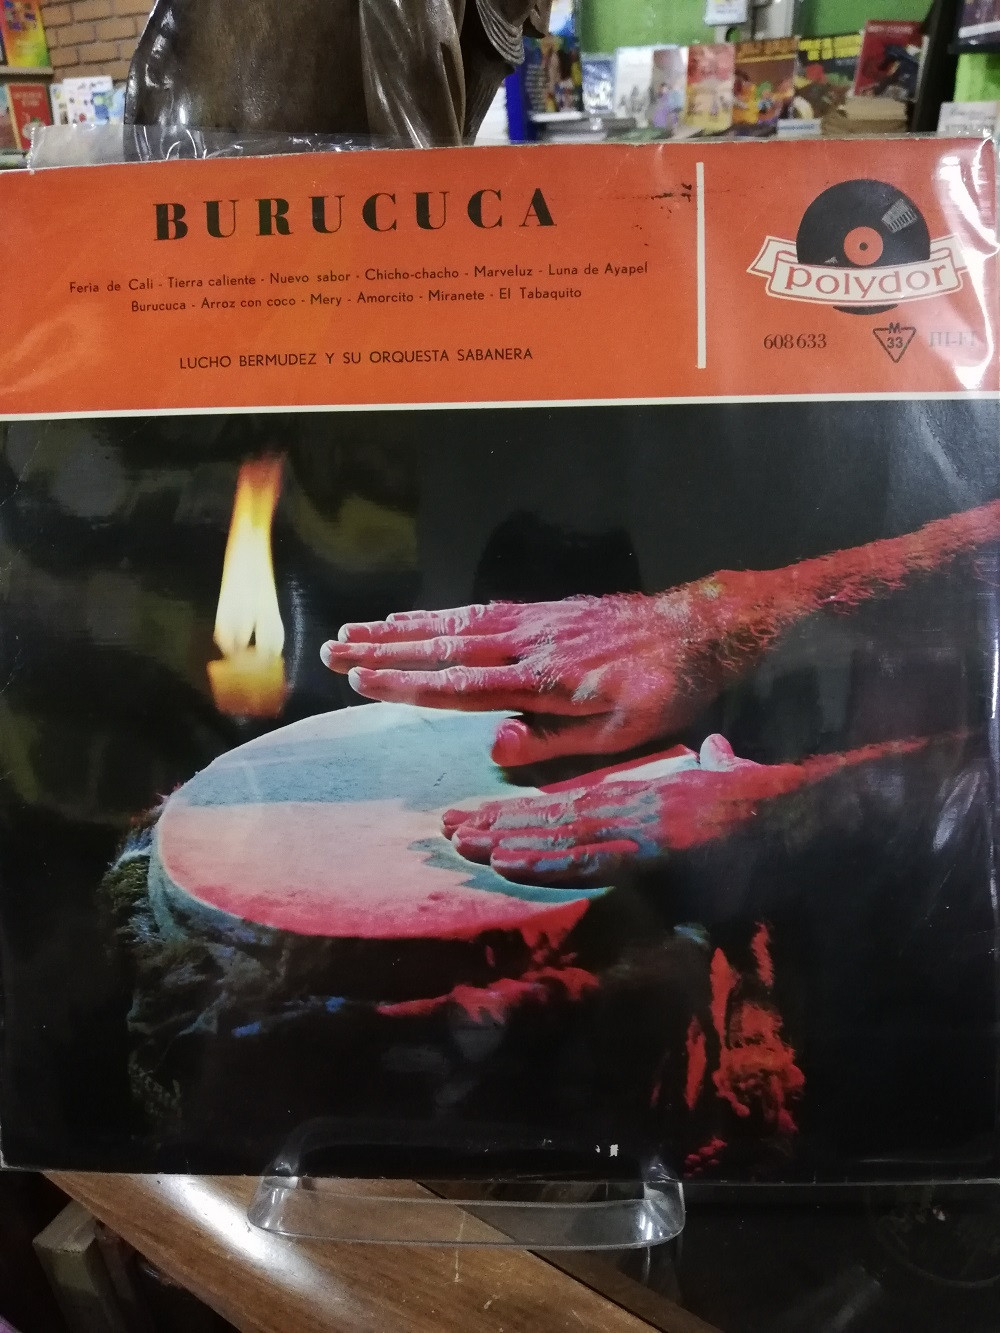 Imagen LP LUCHO BERMUDEZ Y SU ORQUESTA SABANERA - BURUCUCA 1